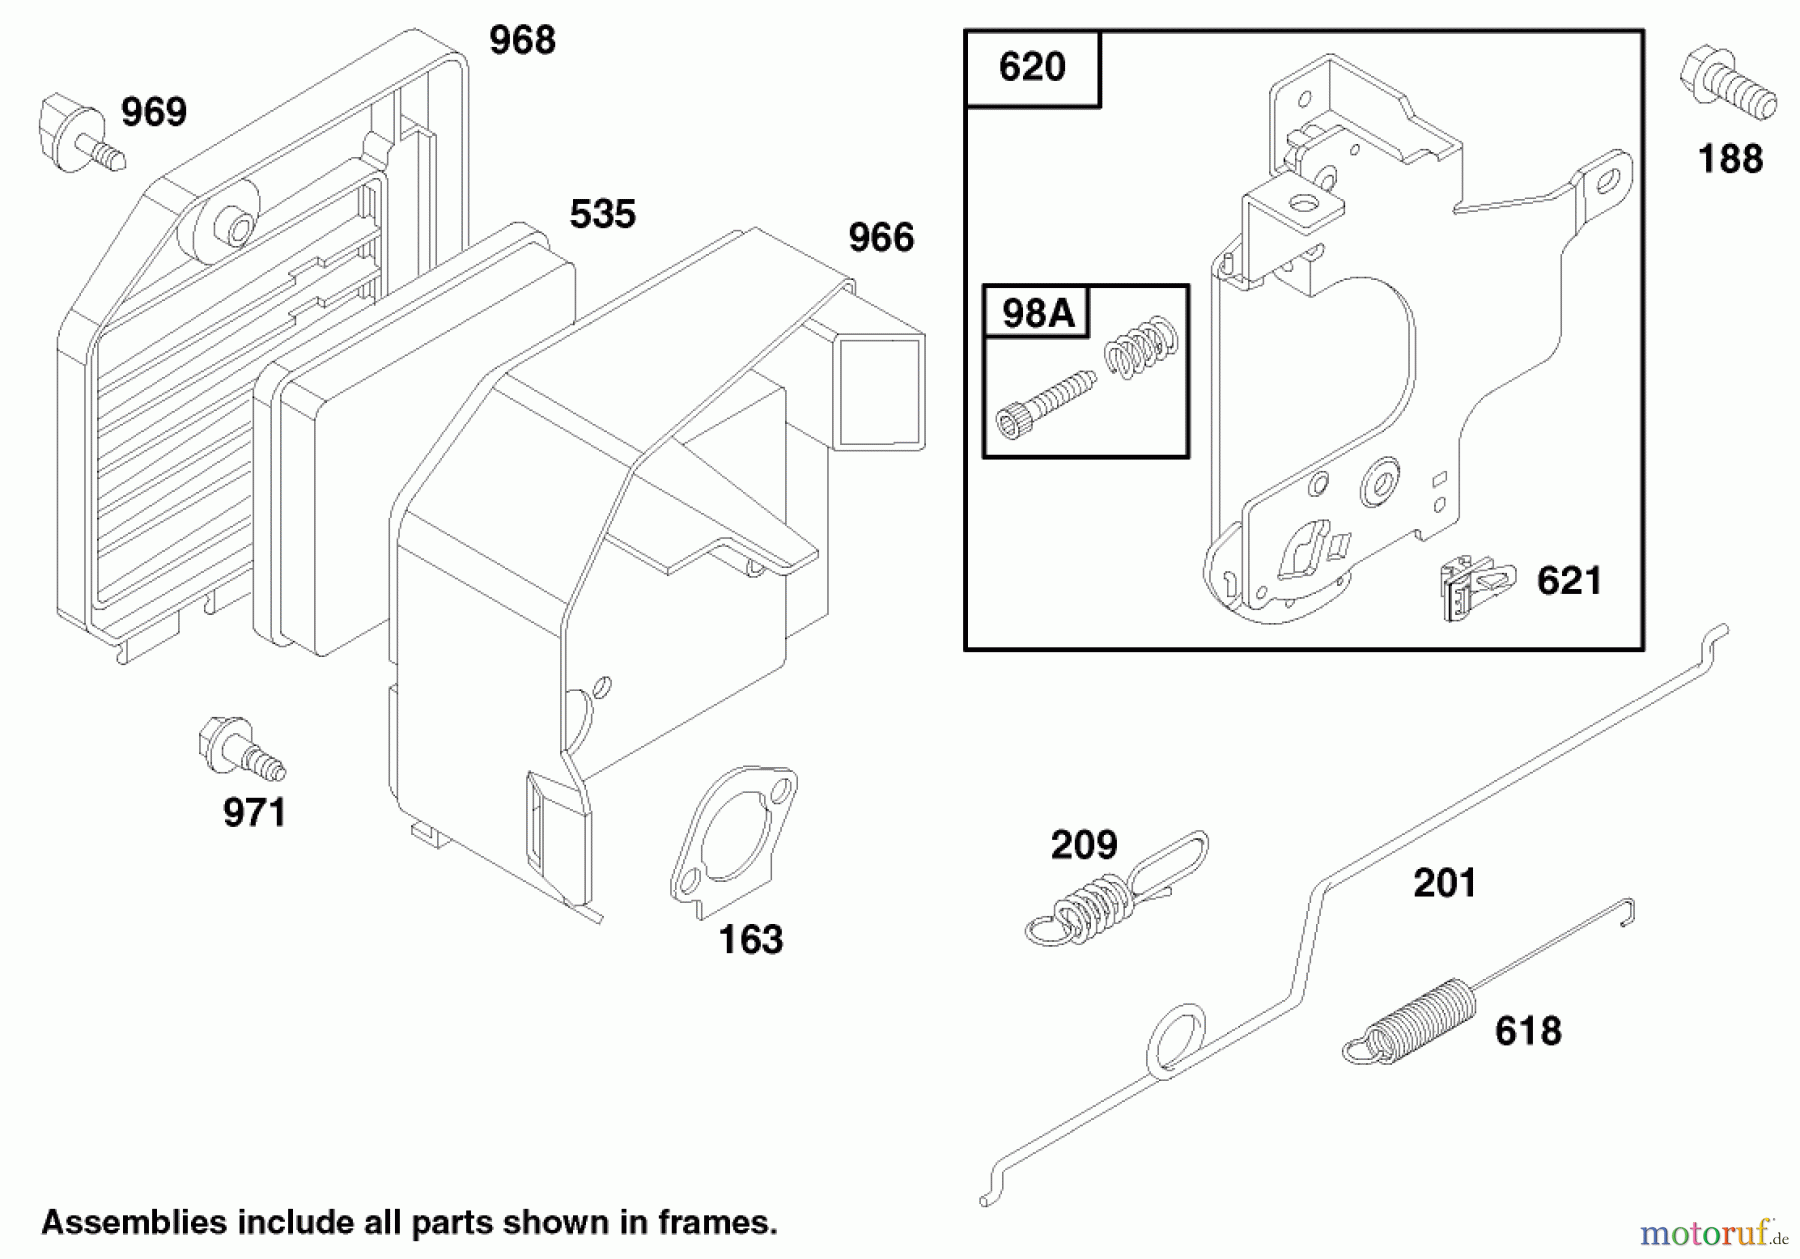  Toro Neu Mowers, Walk-Behind Seite 1 20482 - Toro Super Recycler Mower, 1997 (790000001-799999999) ENGINE GTS 150 (MODEL NO. 20483 ONLY) #2